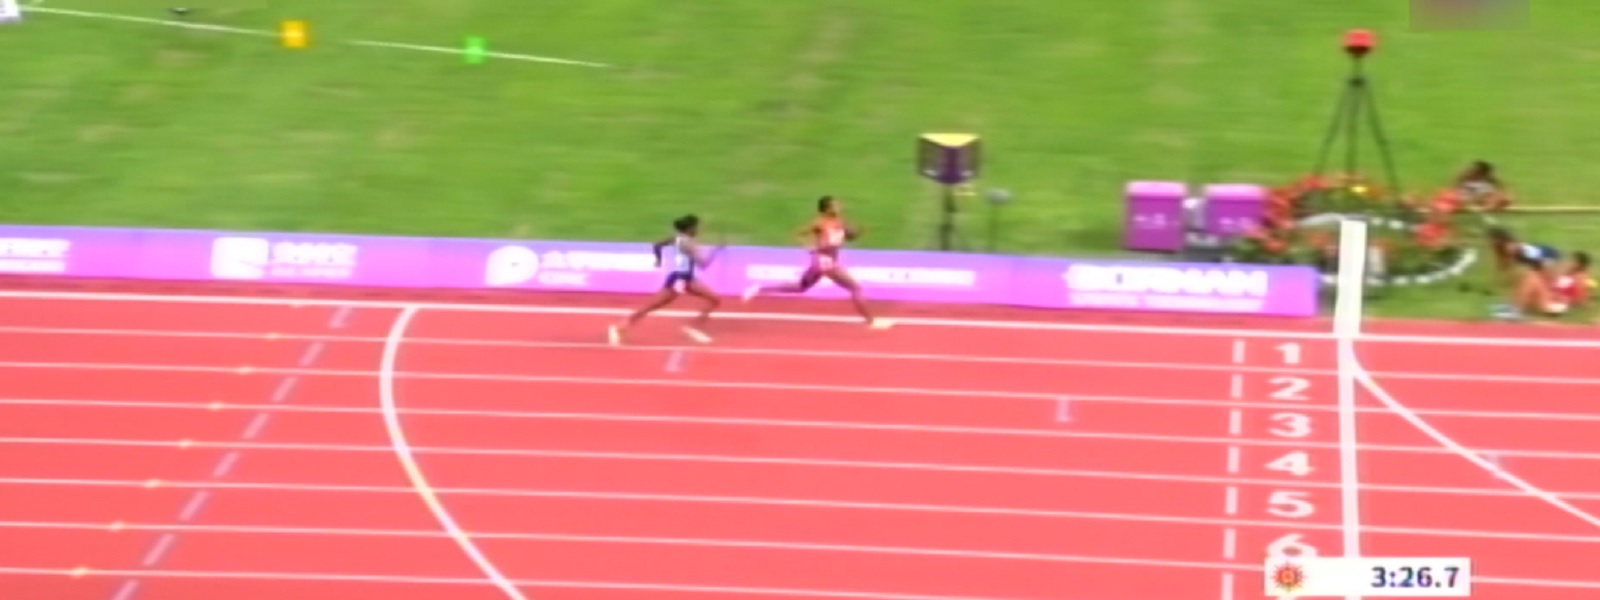 ஆசிய விளையாட்டுப் போட்டிகள்: மகளிருக்கான 400 மீட்டர் அஞ்சலோட்டப் போட்டியில் இலங்கைக்கு வெண்கல பதக்கம்